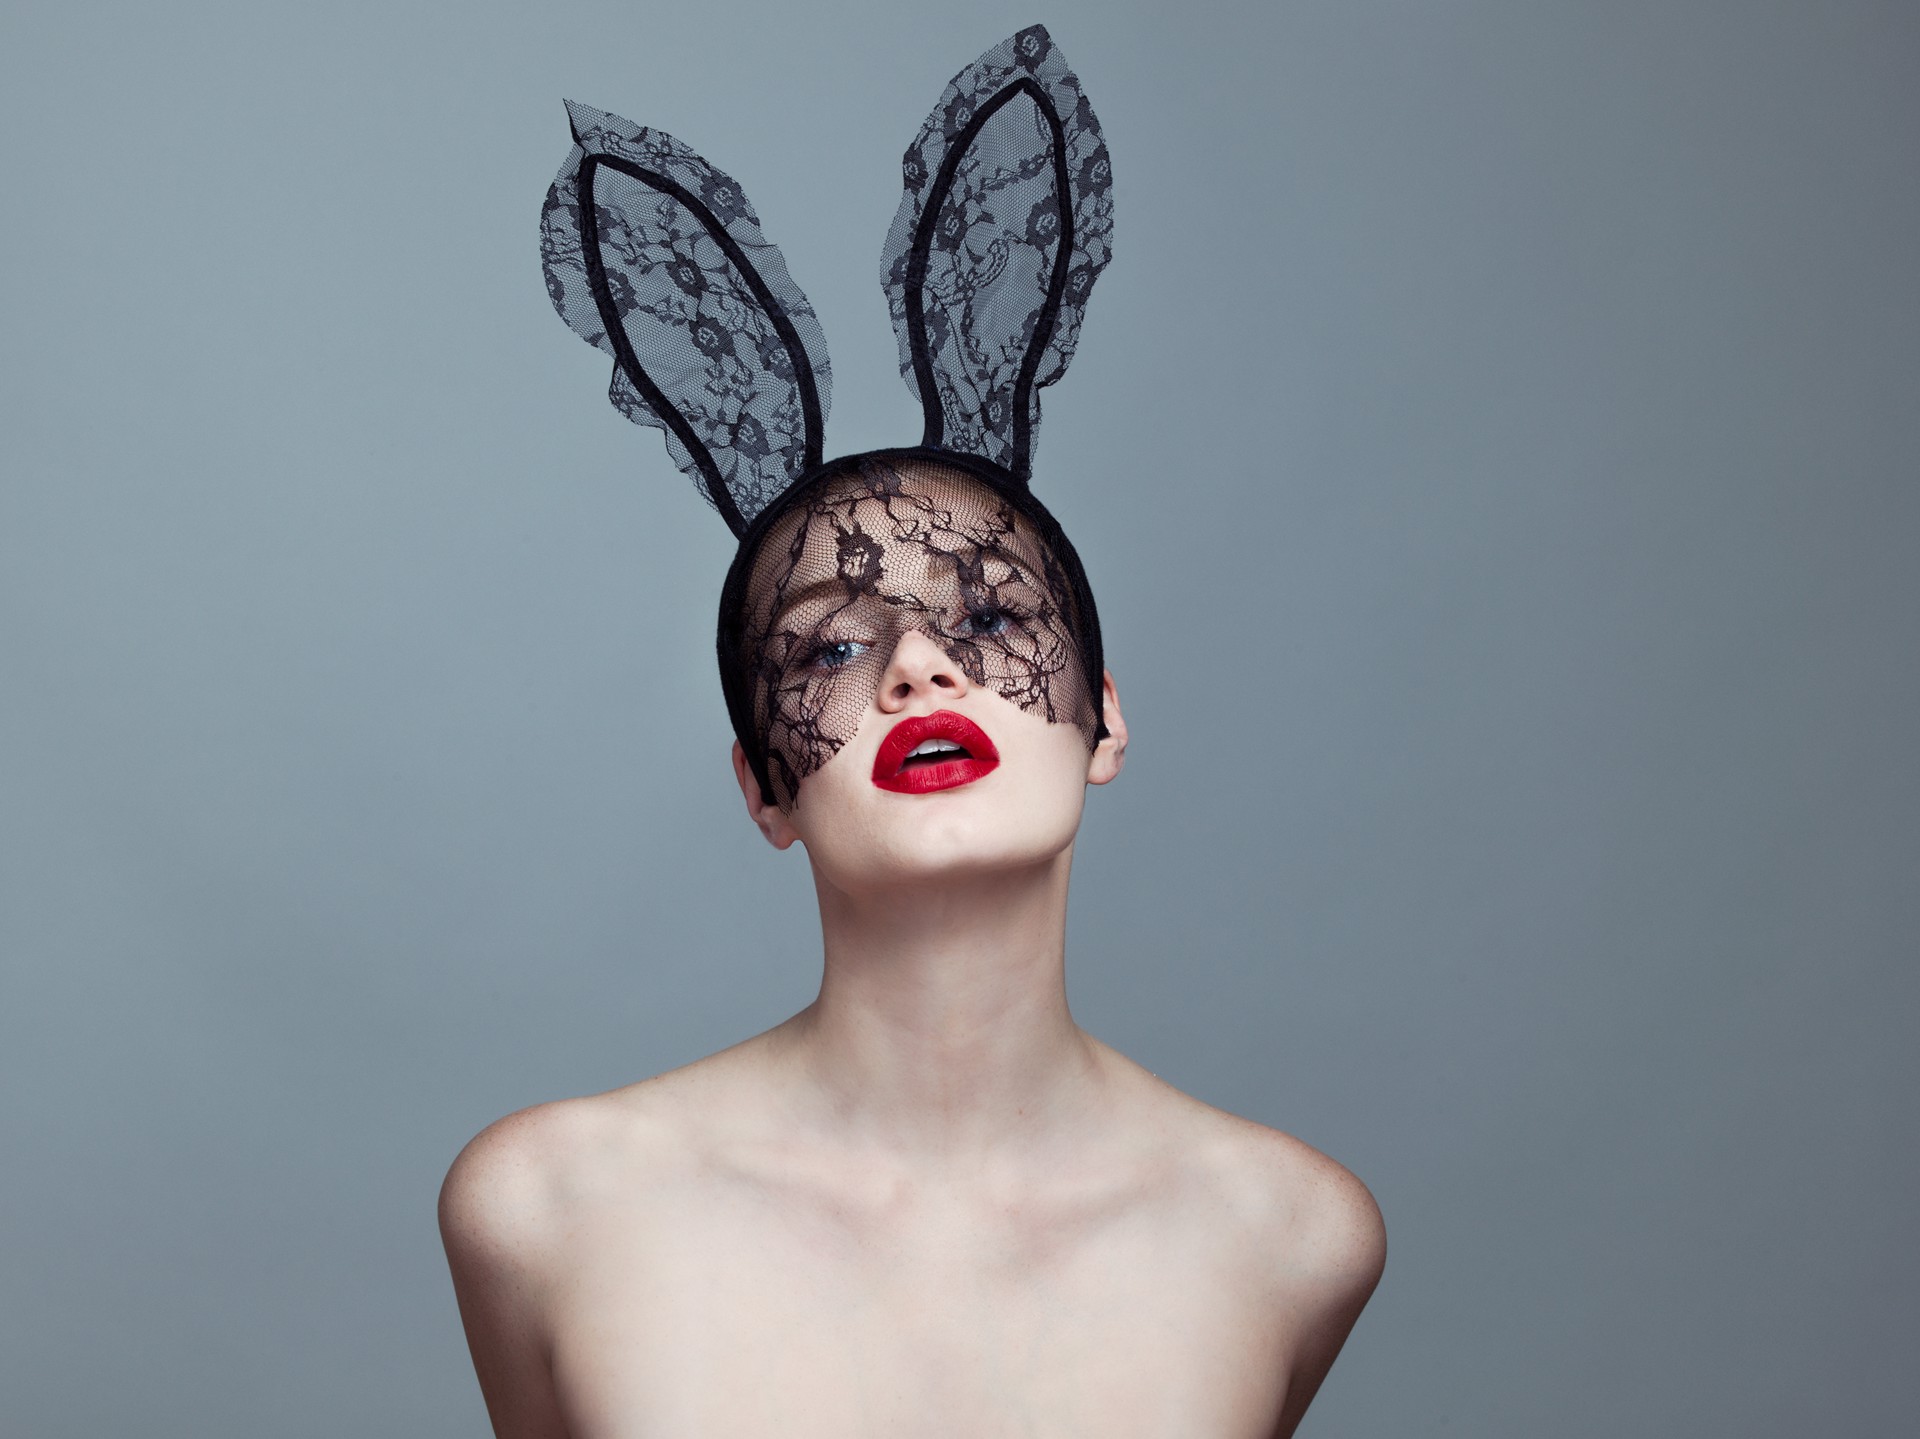 Bunny II (AP) by Tyler Shields